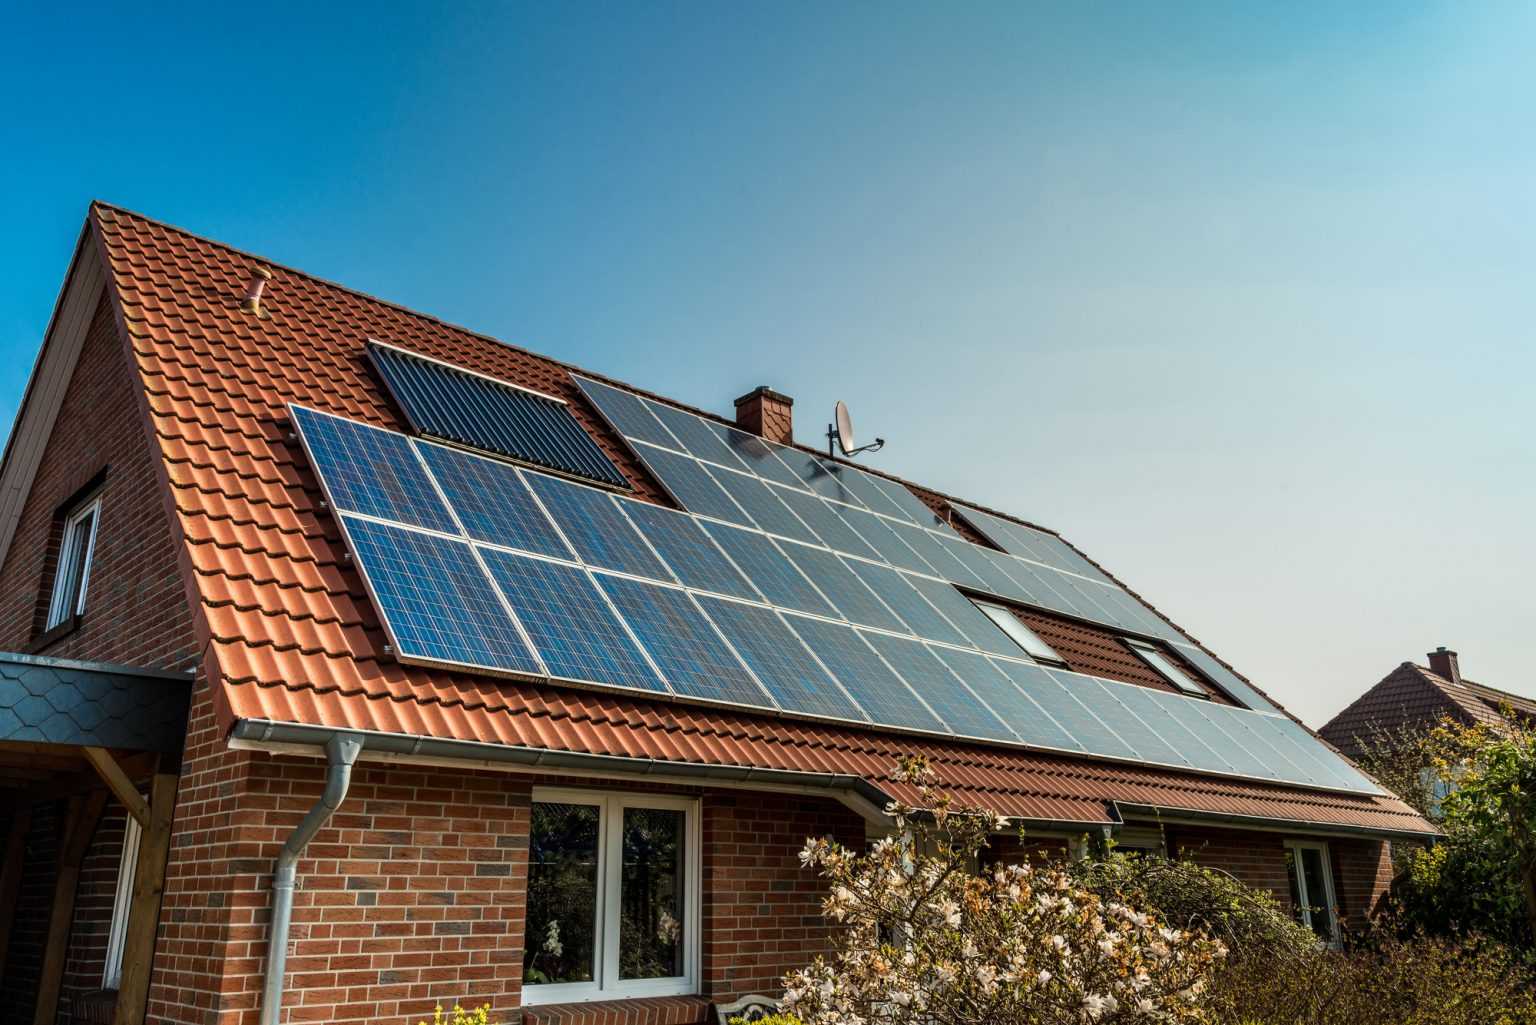 Солнечные электростанции купить для дачи и дома в москве, цена комплекта